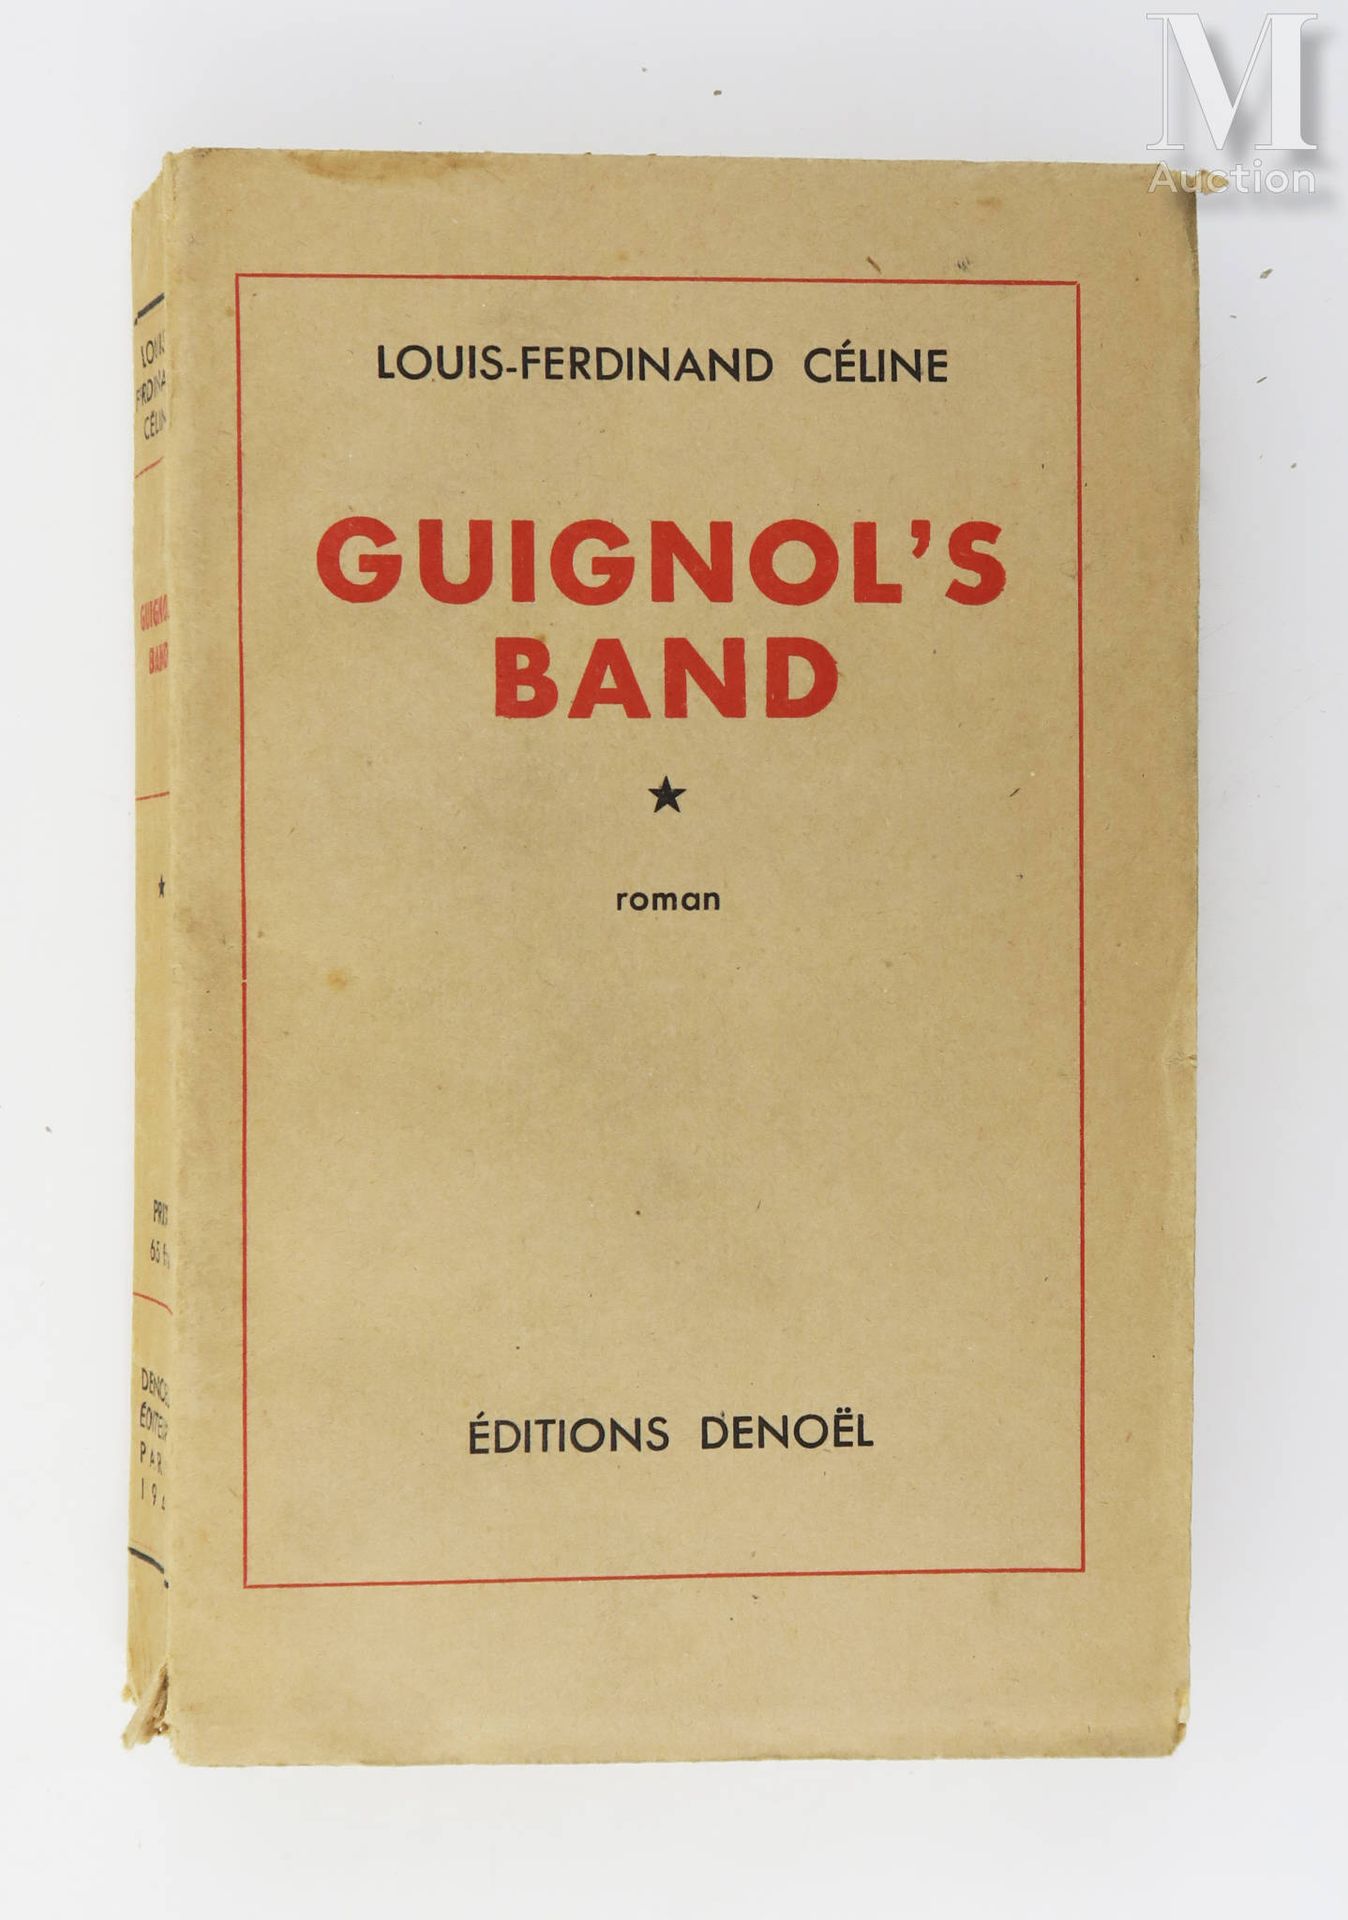 CÉLINE (Louis-Ferdinand). Guignol's band. Paris, Denoël, 1944.

In-8 Broschur, b&hellip;